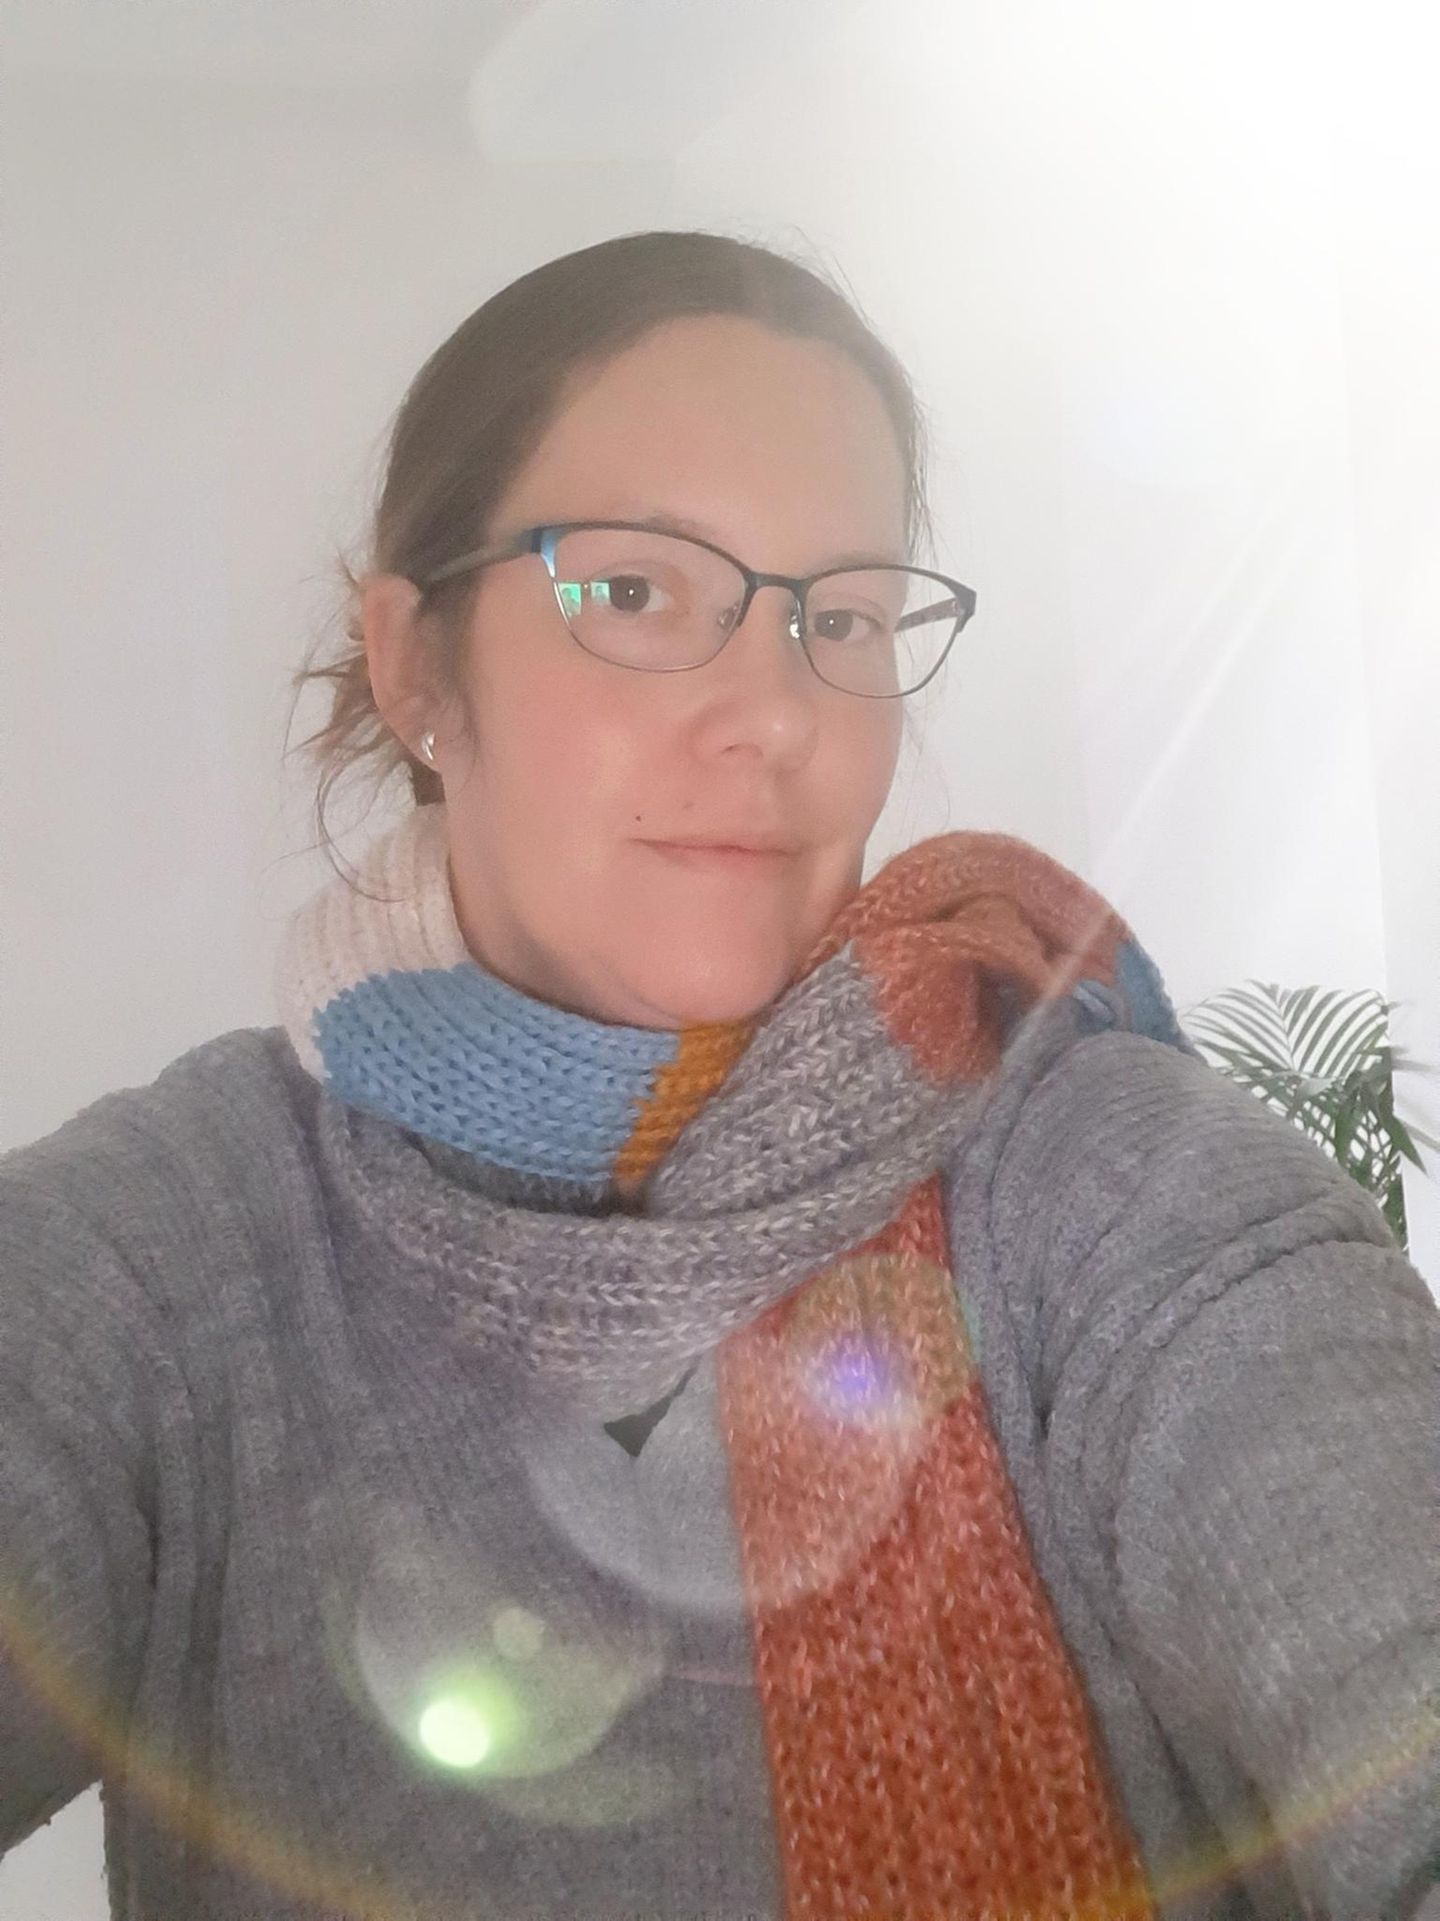 Schal fürs Leben 2020: Danke, liebe Leser:innen, dass ihr den Schal getragen habt!